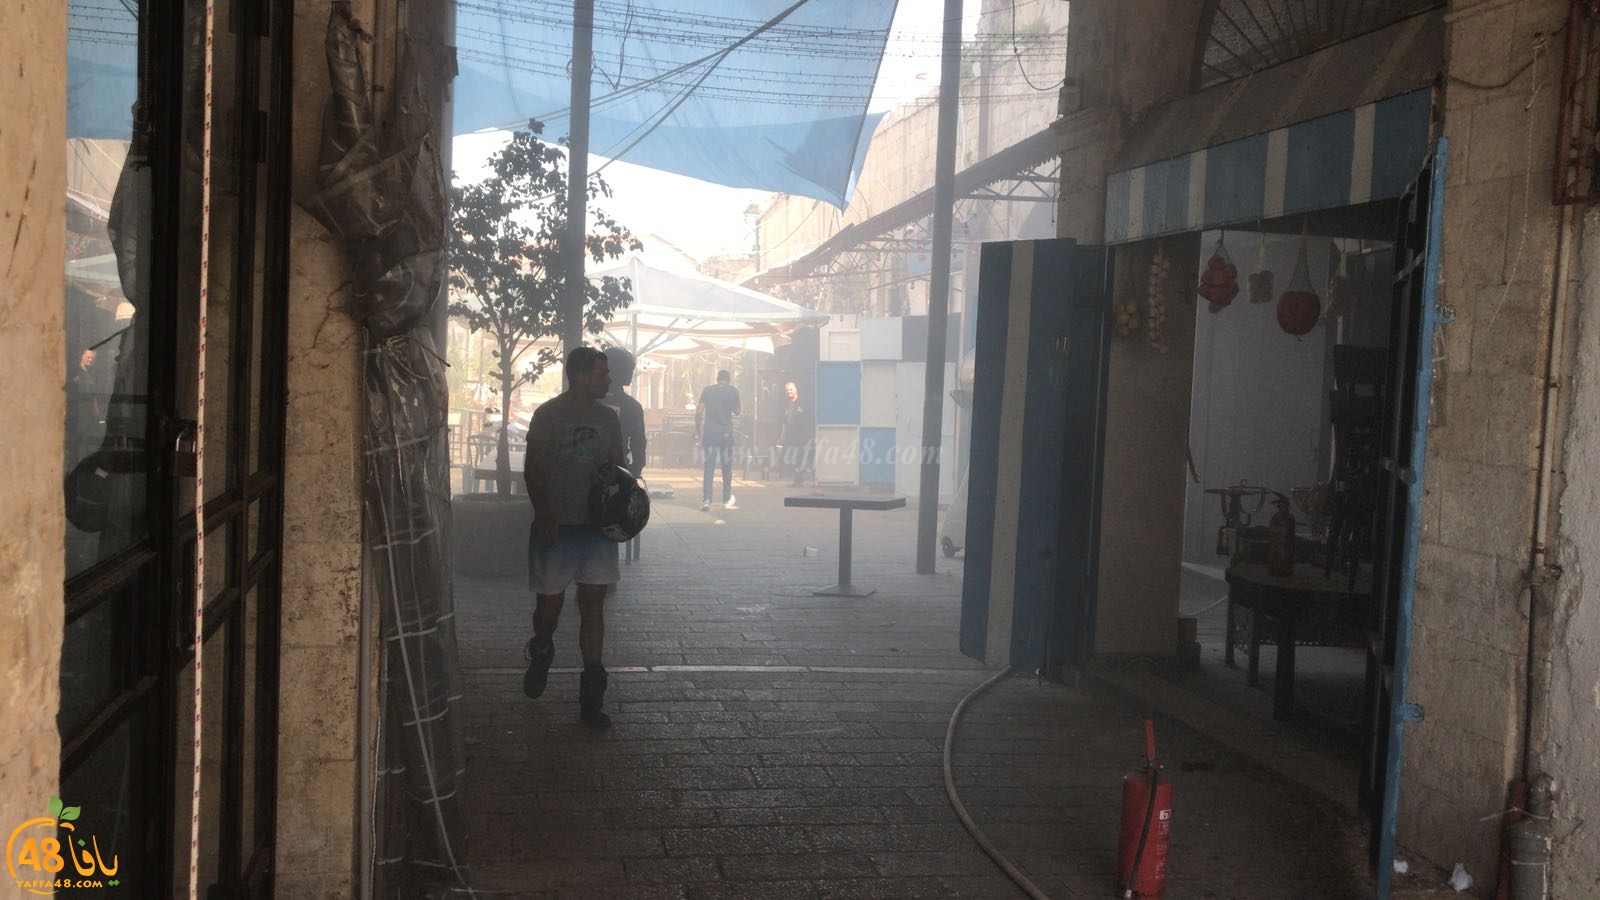   بالفيديو: إصابة طفيفة بحريق داخل محل تجاري قرب دوار الساعة بيافا 